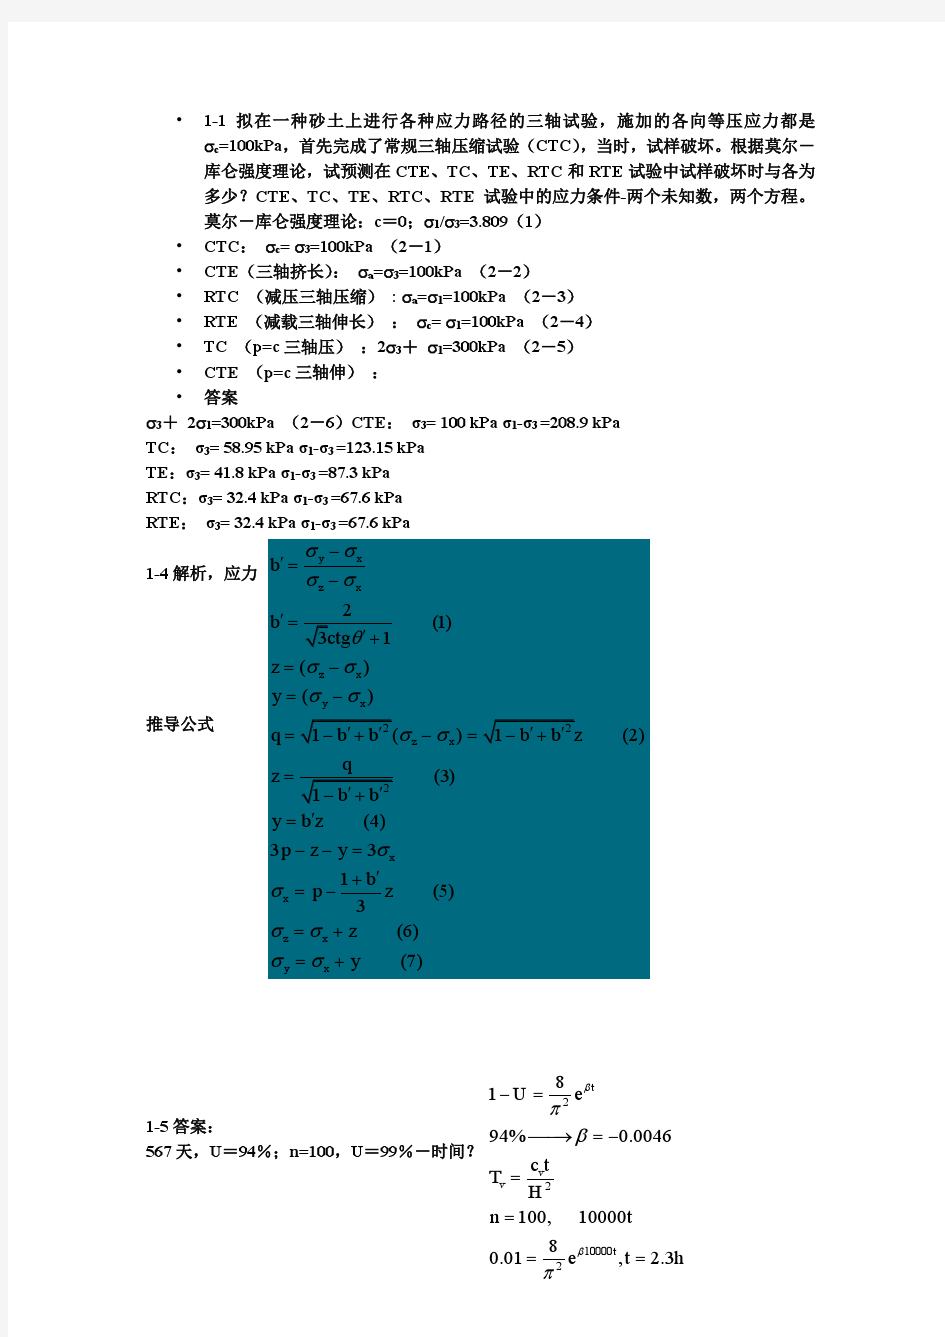 高等土力学(李广信)1-5章部分习题答案(最新最清晰版)